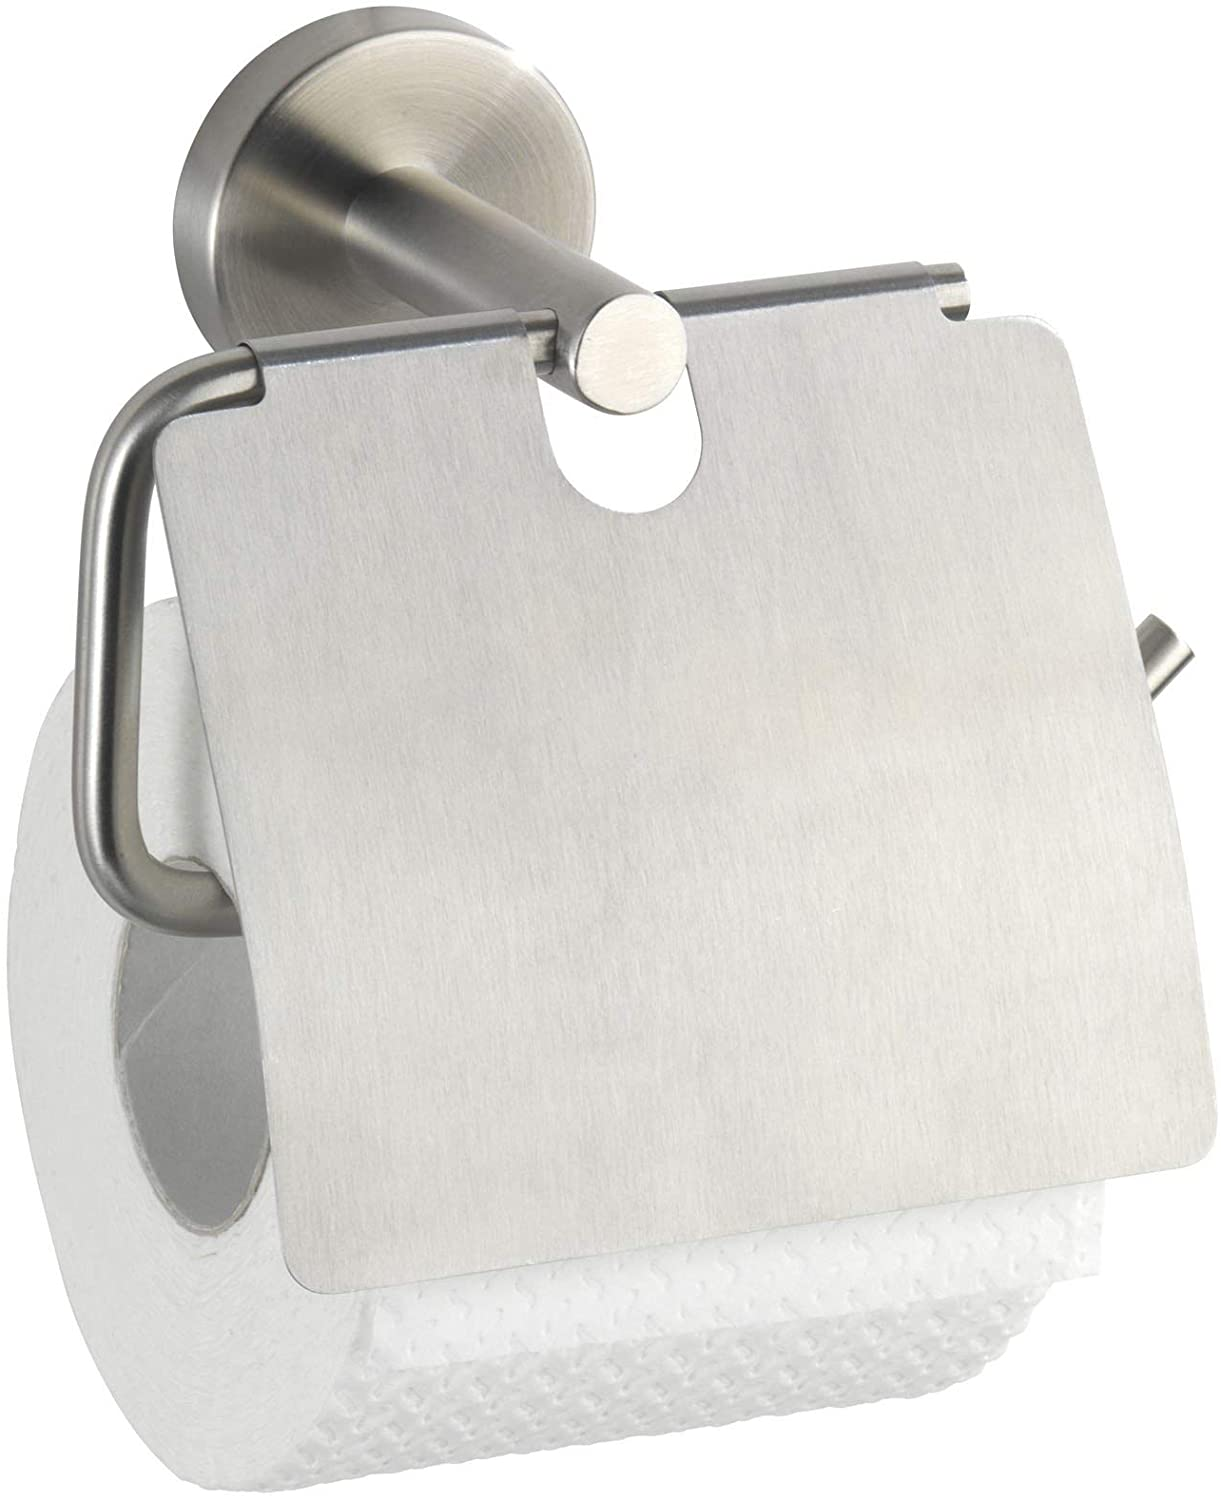 Toilettenpapierhalter mit Deckel Bosio Edelstahl matt - WC-Rollenhalter, Edelstahl rostfrei, 15 x 13.5 x 7 cm, Matt